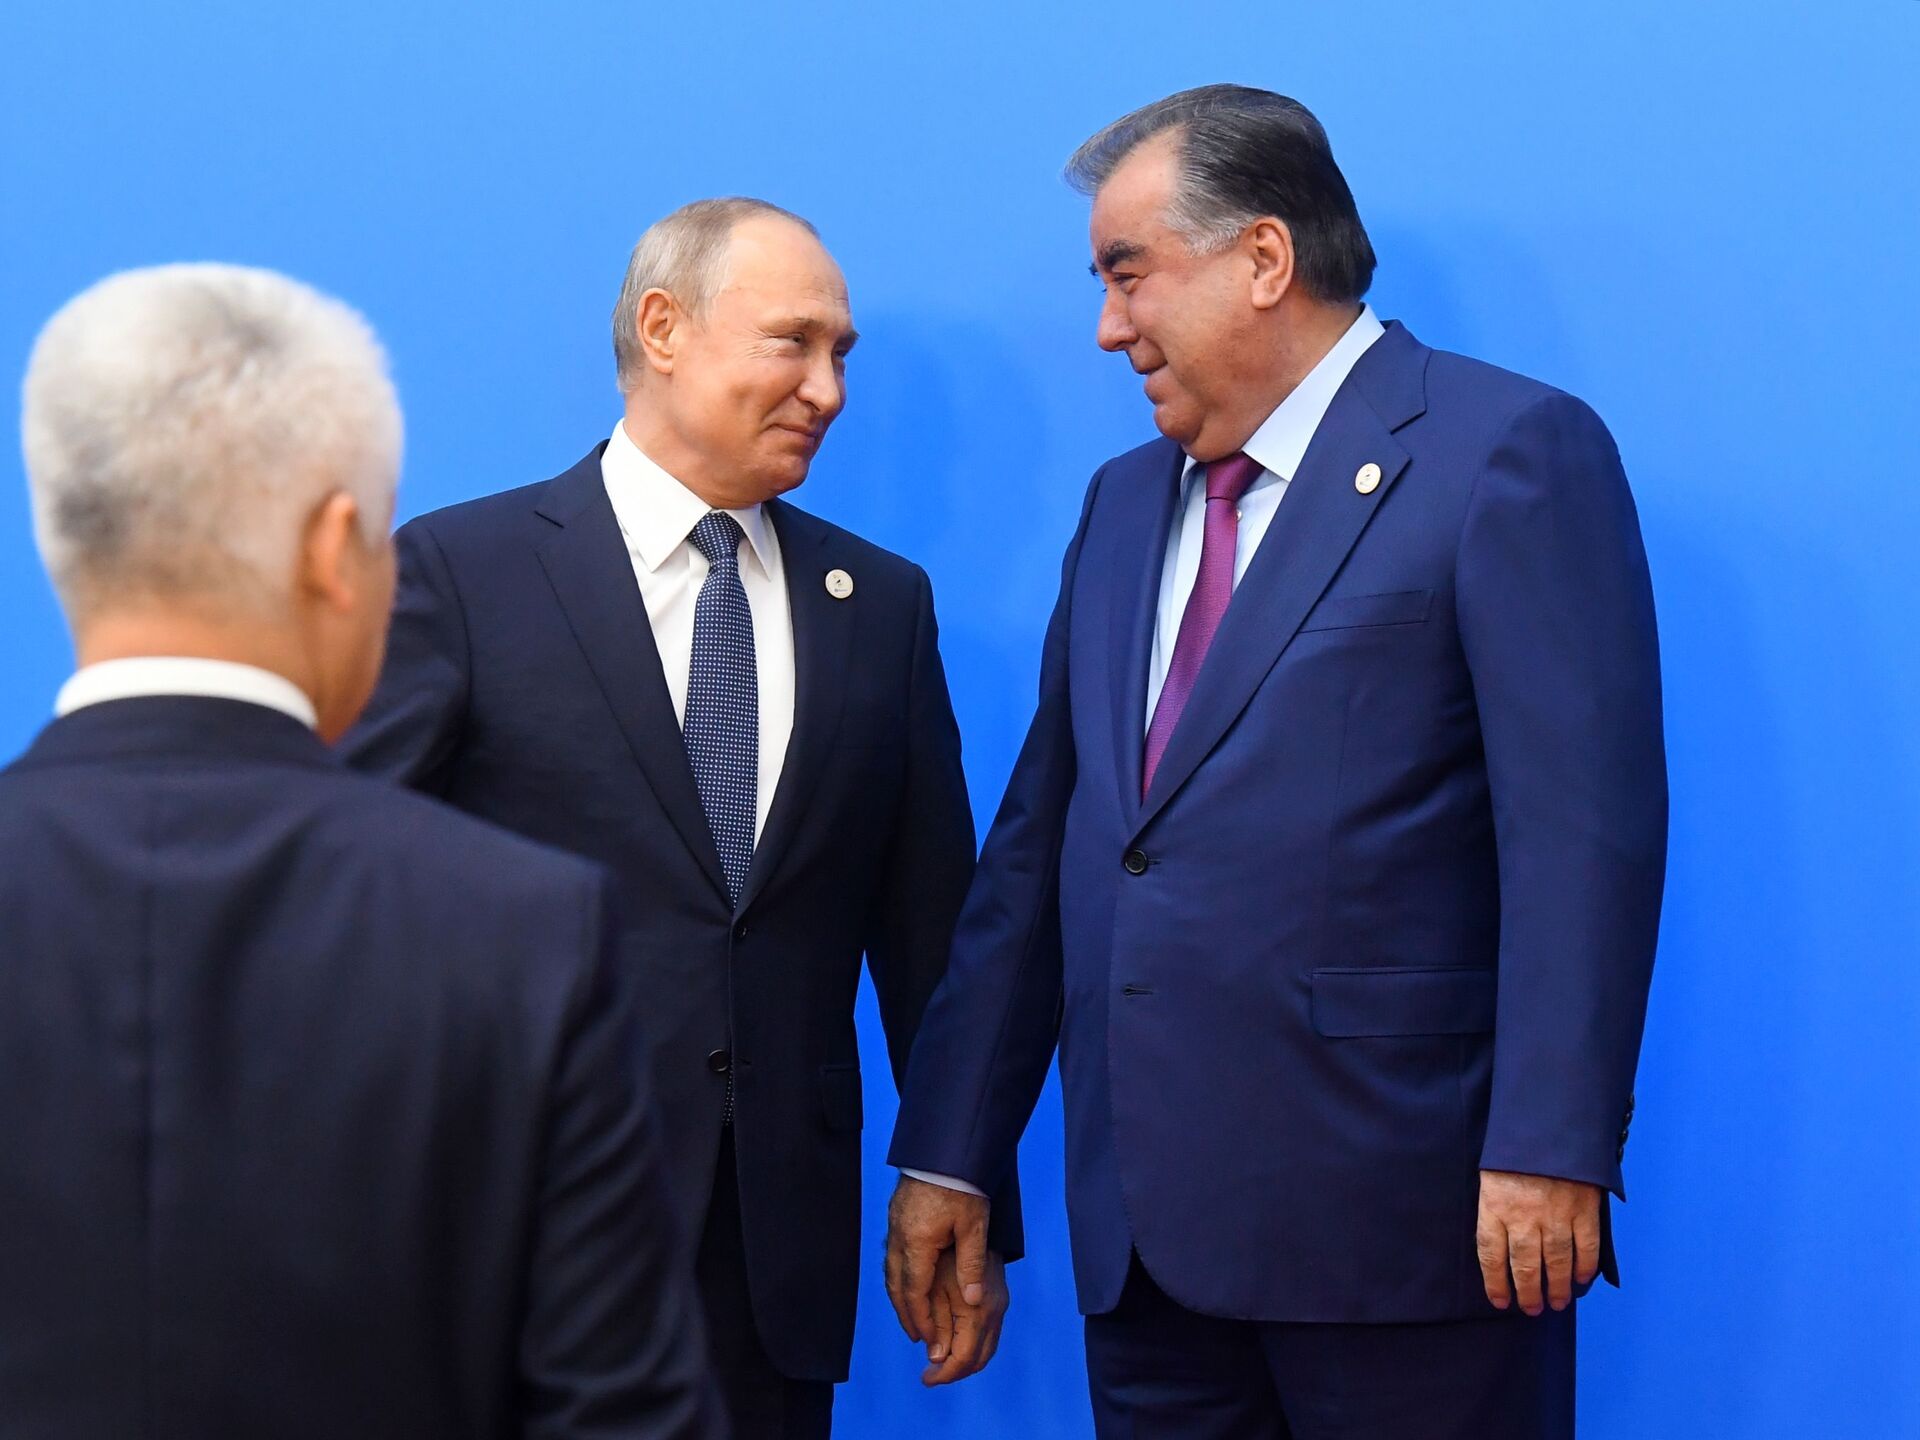 Узбекистан входит в россию